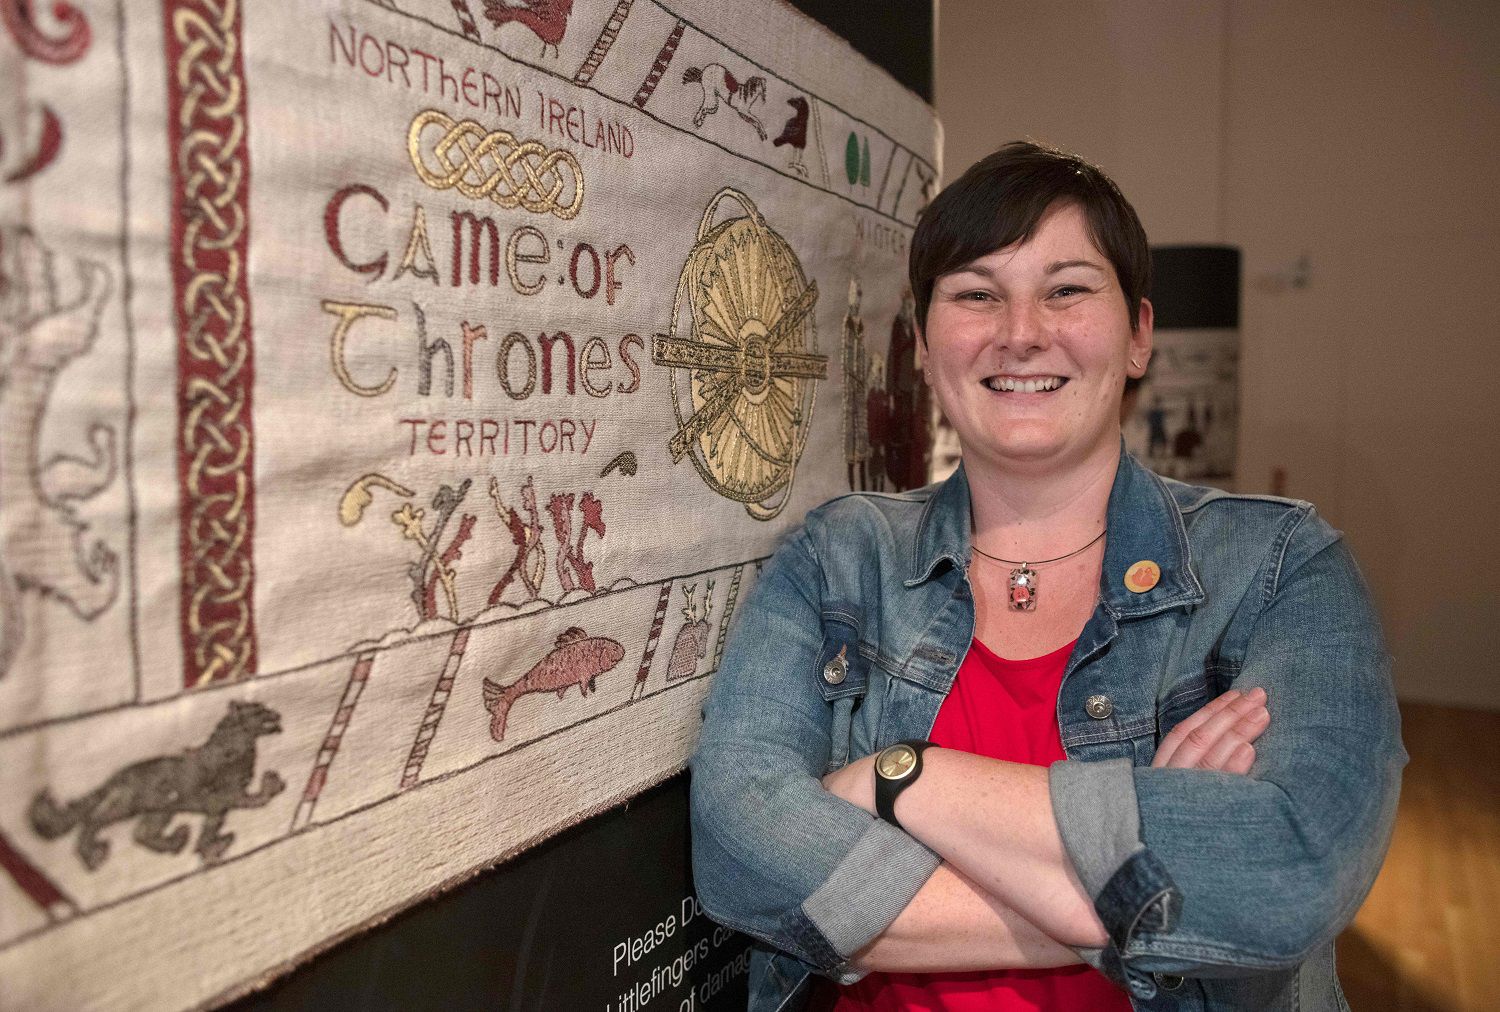 Museo expondrá tapiz bordado con la historia de la serie Game of Thrones